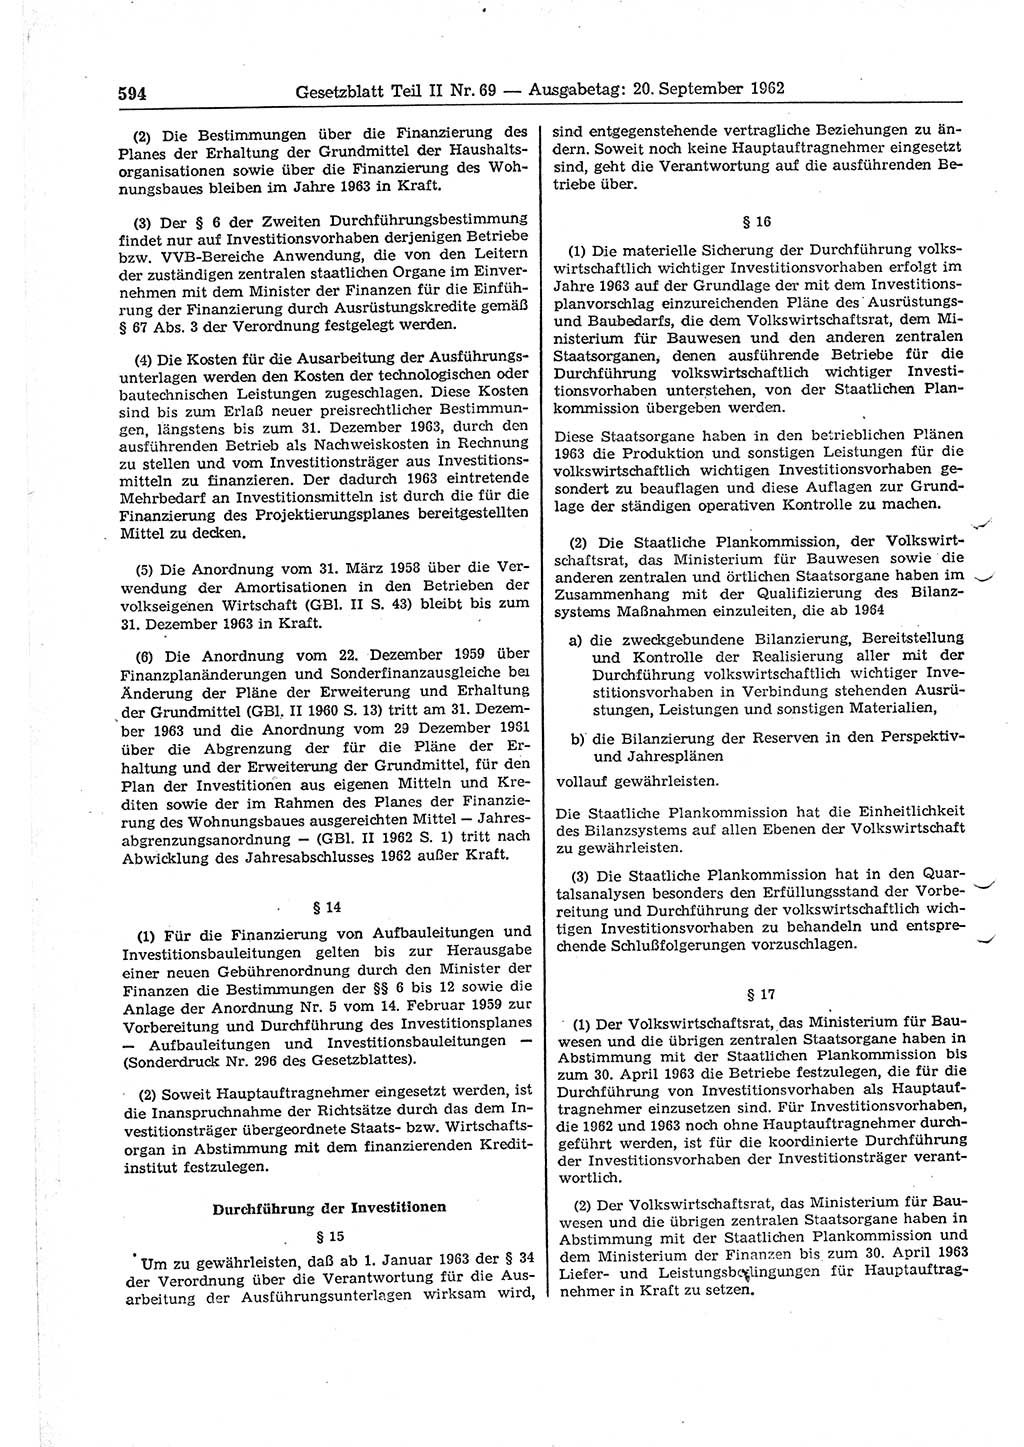 Gesetzblatt (GBl.) der Deutschen Demokratischen Republik (DDR) Teil ⅠⅠ 1962, Seite 594 (GBl. DDR ⅠⅠ 1962, S. 594)